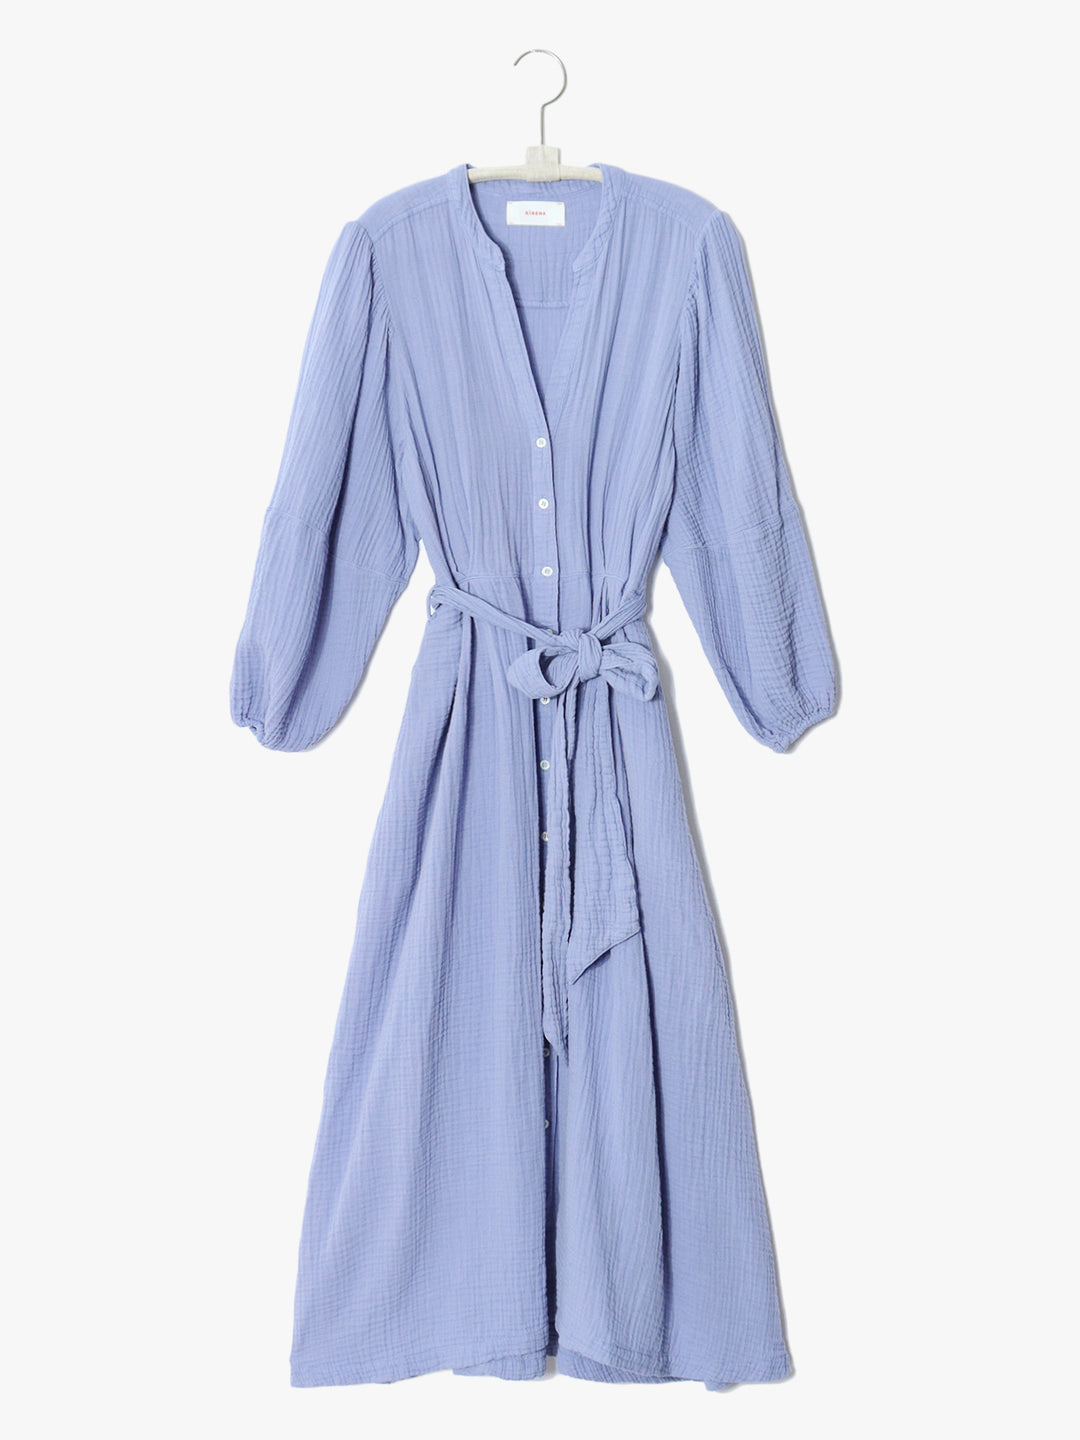 Xirena - Selene Dress In Perri Light Blue